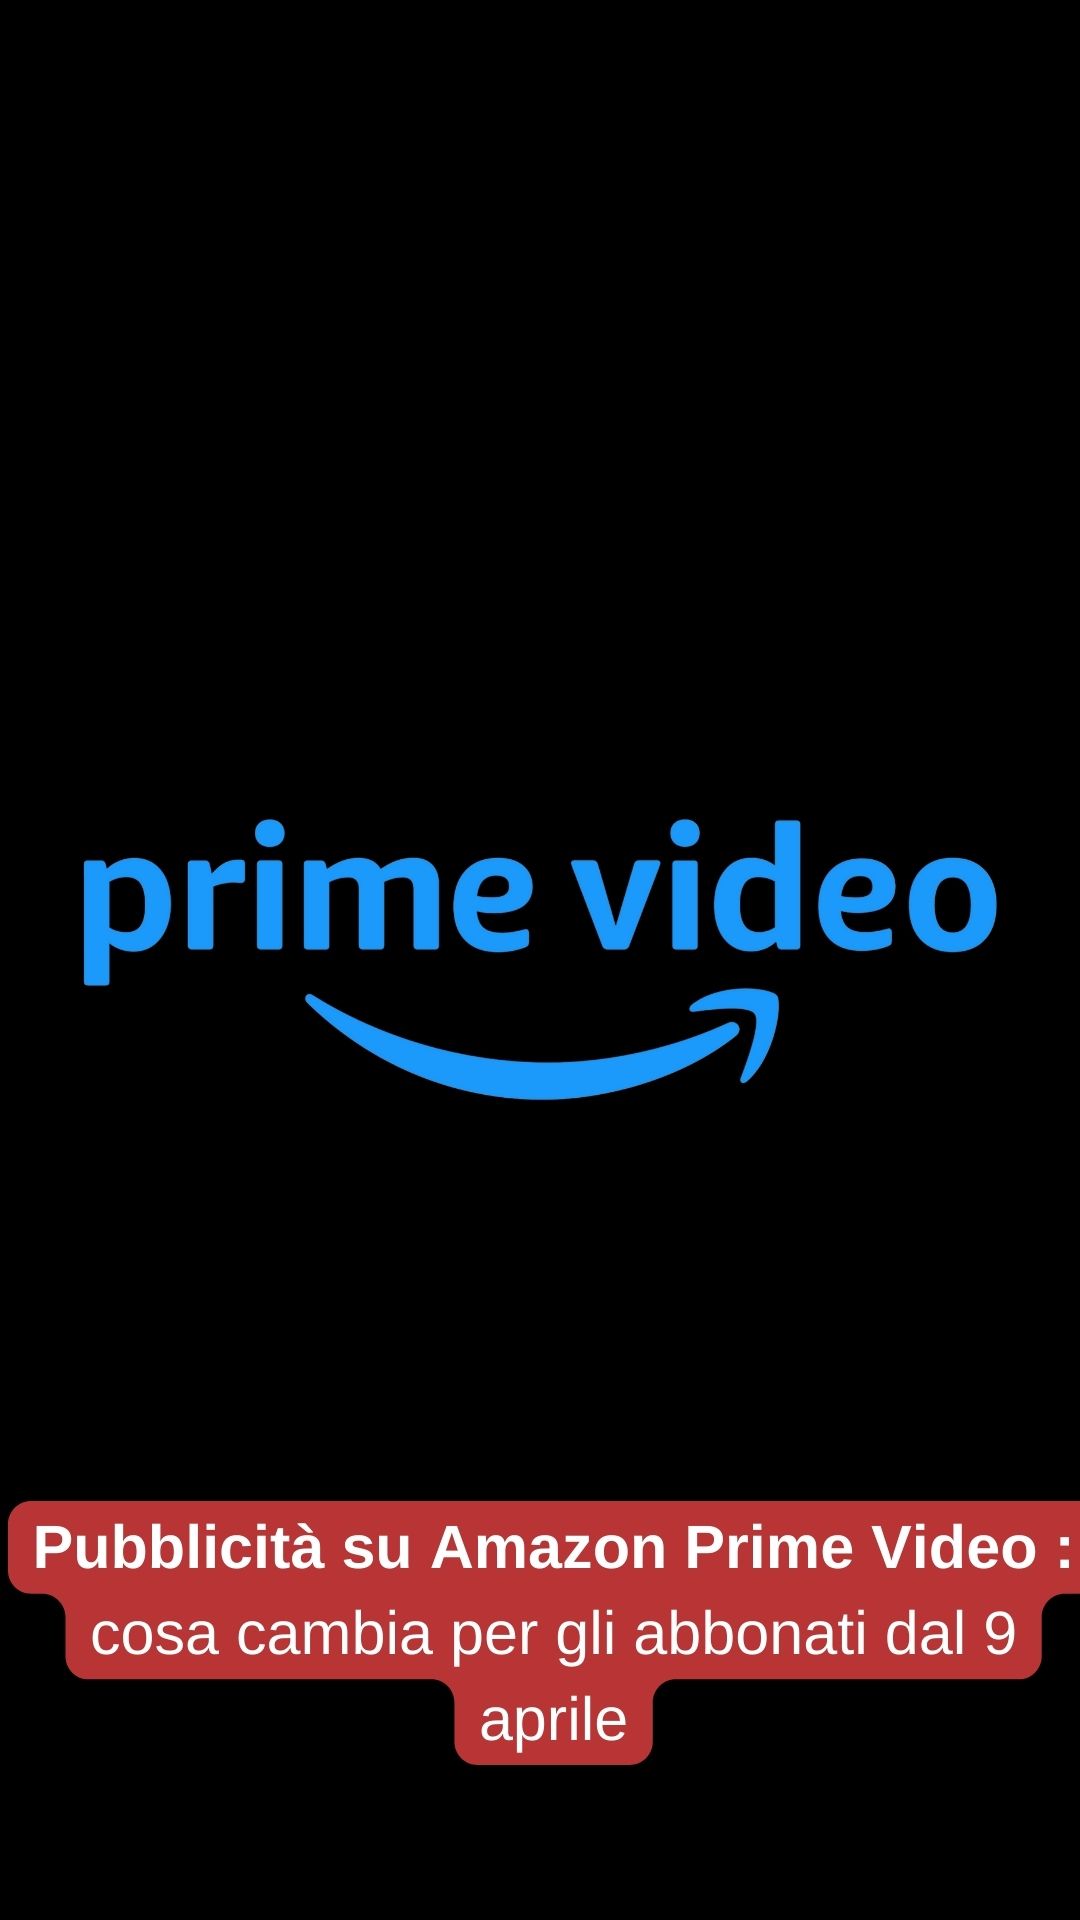 Pubblicità su Amazon Prime Video cosa cambia per gli abbonati dal 9 aprile